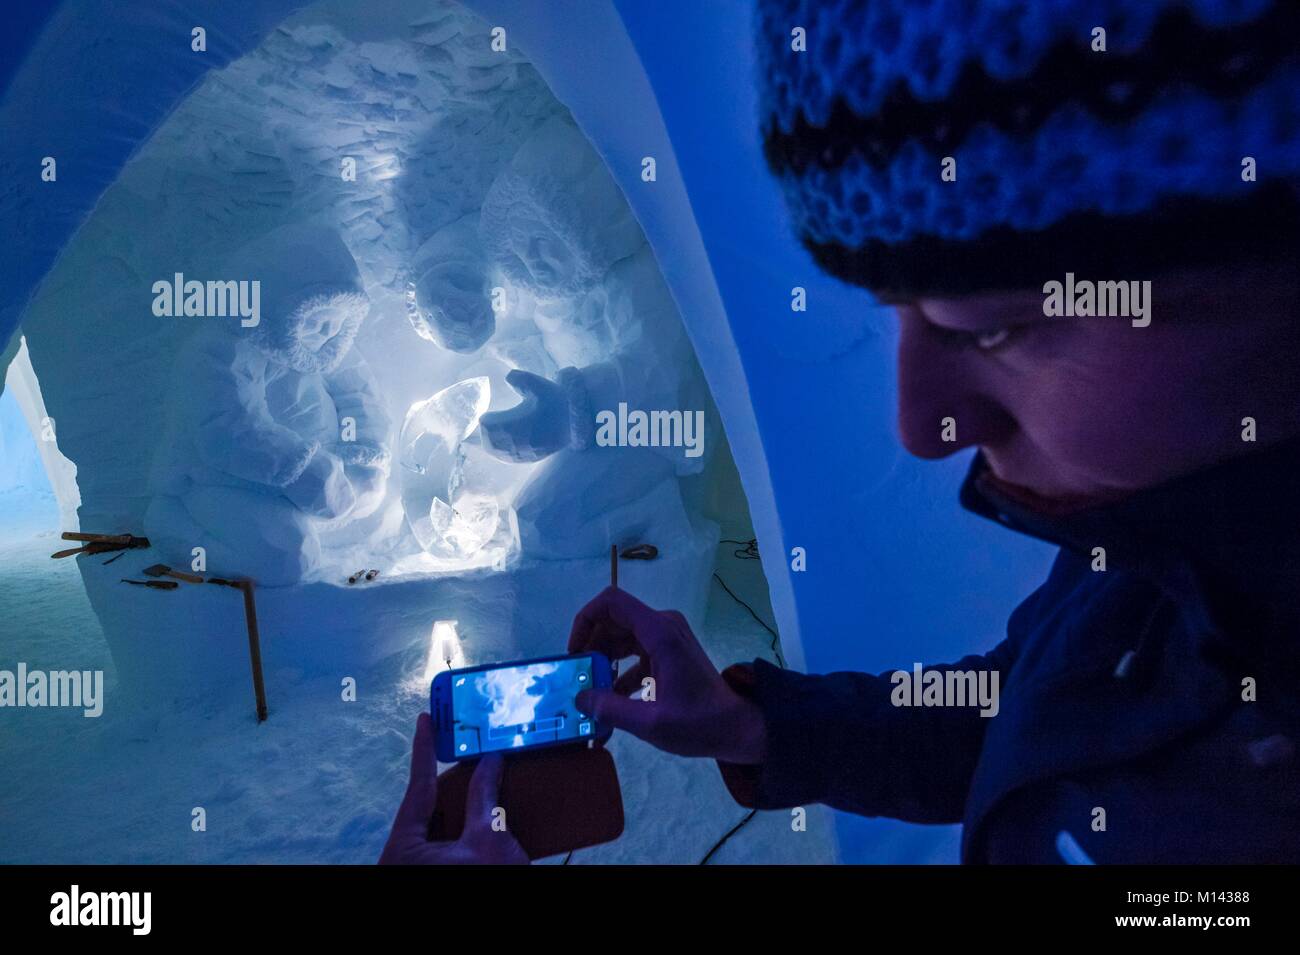 Frankreich, Savoyen, Tarentaise, Vanoise, Bögen 2000 Ski Resort, Manon CHERPE nimmt ein Bild von einem Ihrer Skulpturen, einem traditionellen Inuit fischen Szene im Schnee Wand der Iglu-dorf Skulptur Galerie, in der Wintersaison 2017-2018 Stockfoto